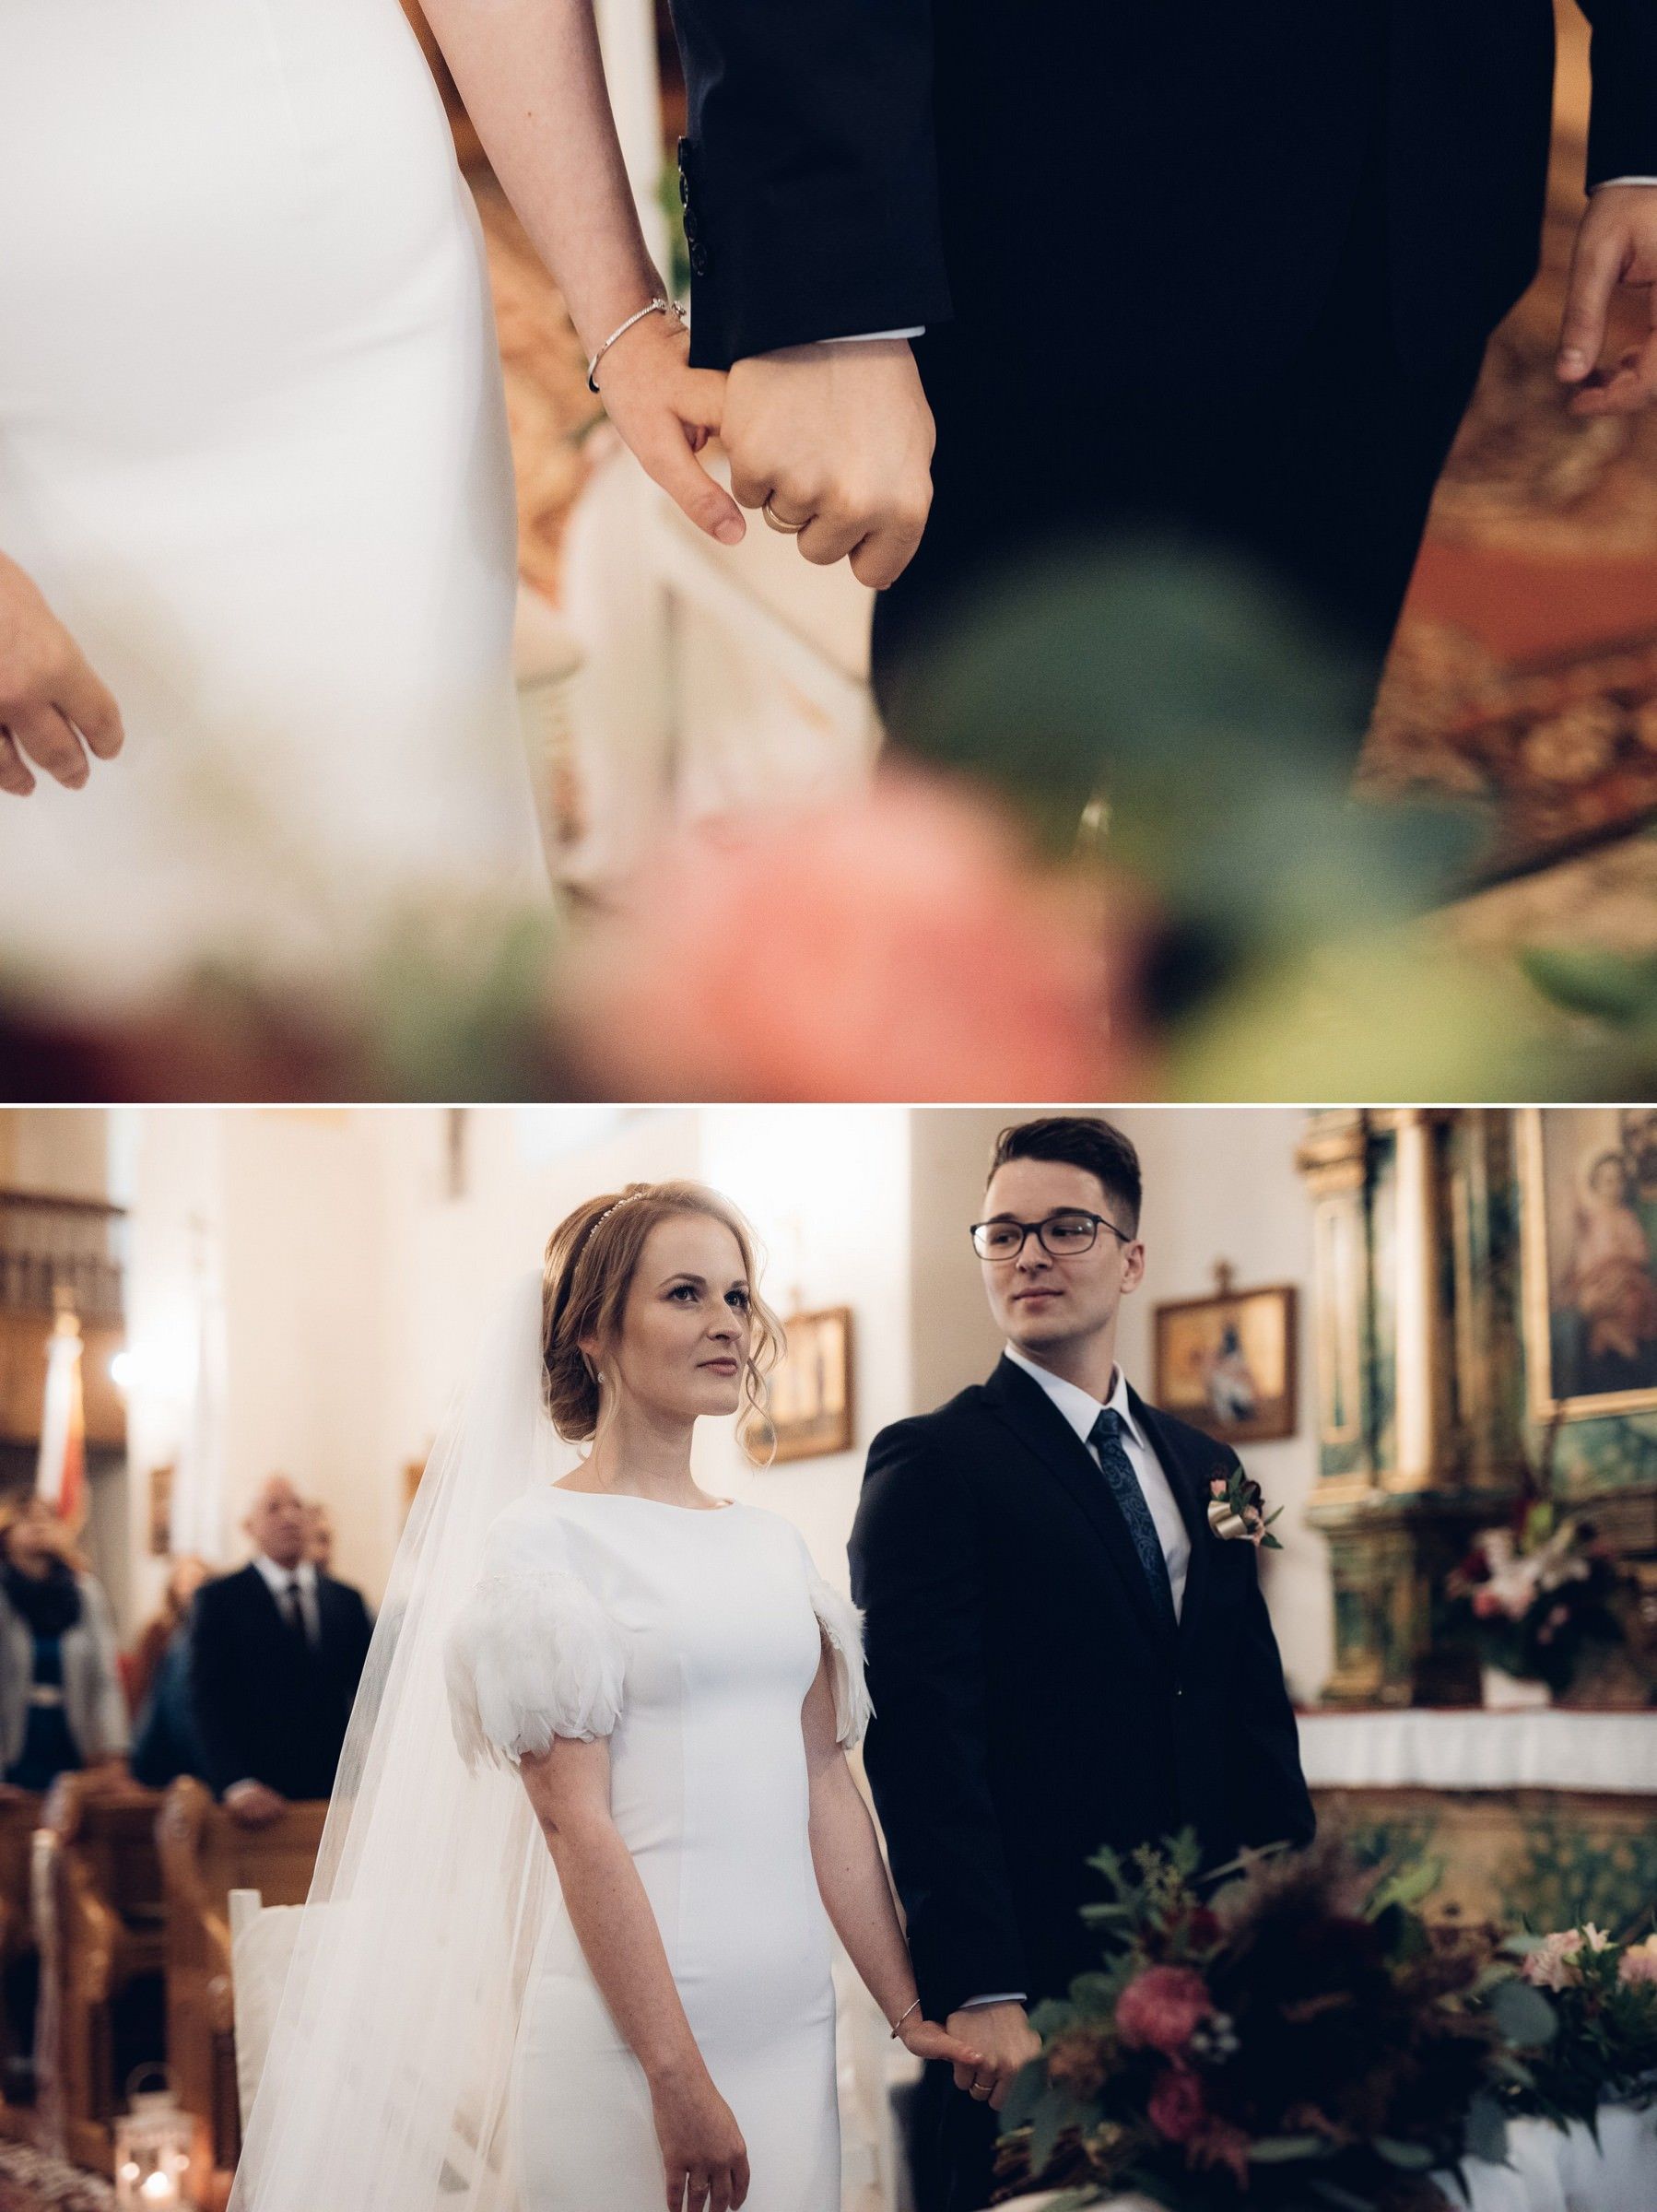 wesele palac olszanica slawek wojton fotograf rzeszow 24 S&M - Wesele w pałacu w Olszanicy